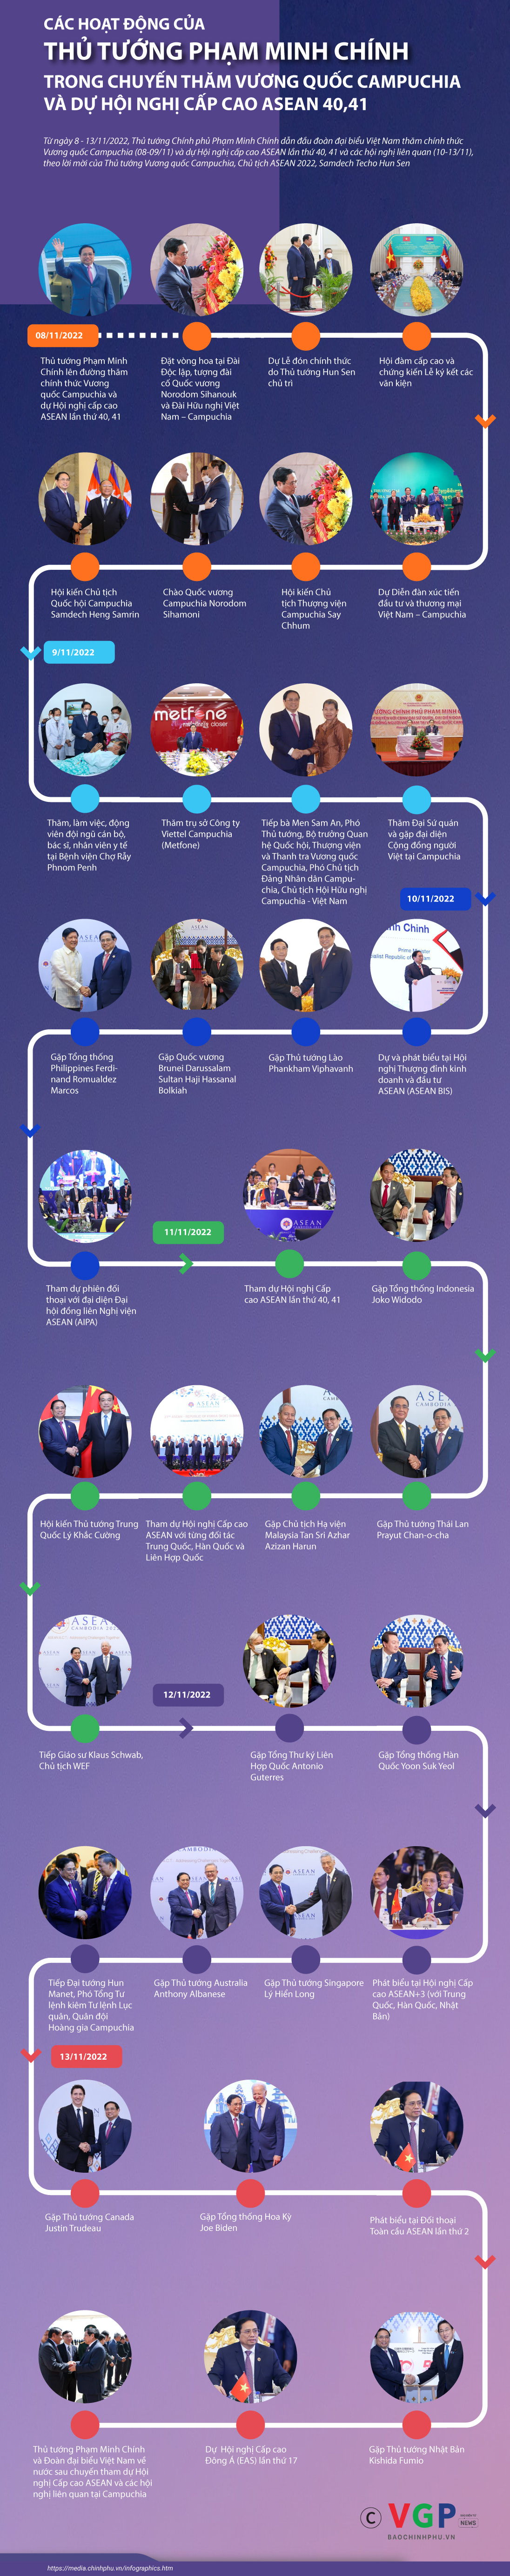 Infographics: Các hoạt động của Thủ tướng Phạm Minh Chính trong chuyến thăm Vương quốc Campuchia và dự hội nghị cấp cao ASEAN 40,41 - Ảnh 1.